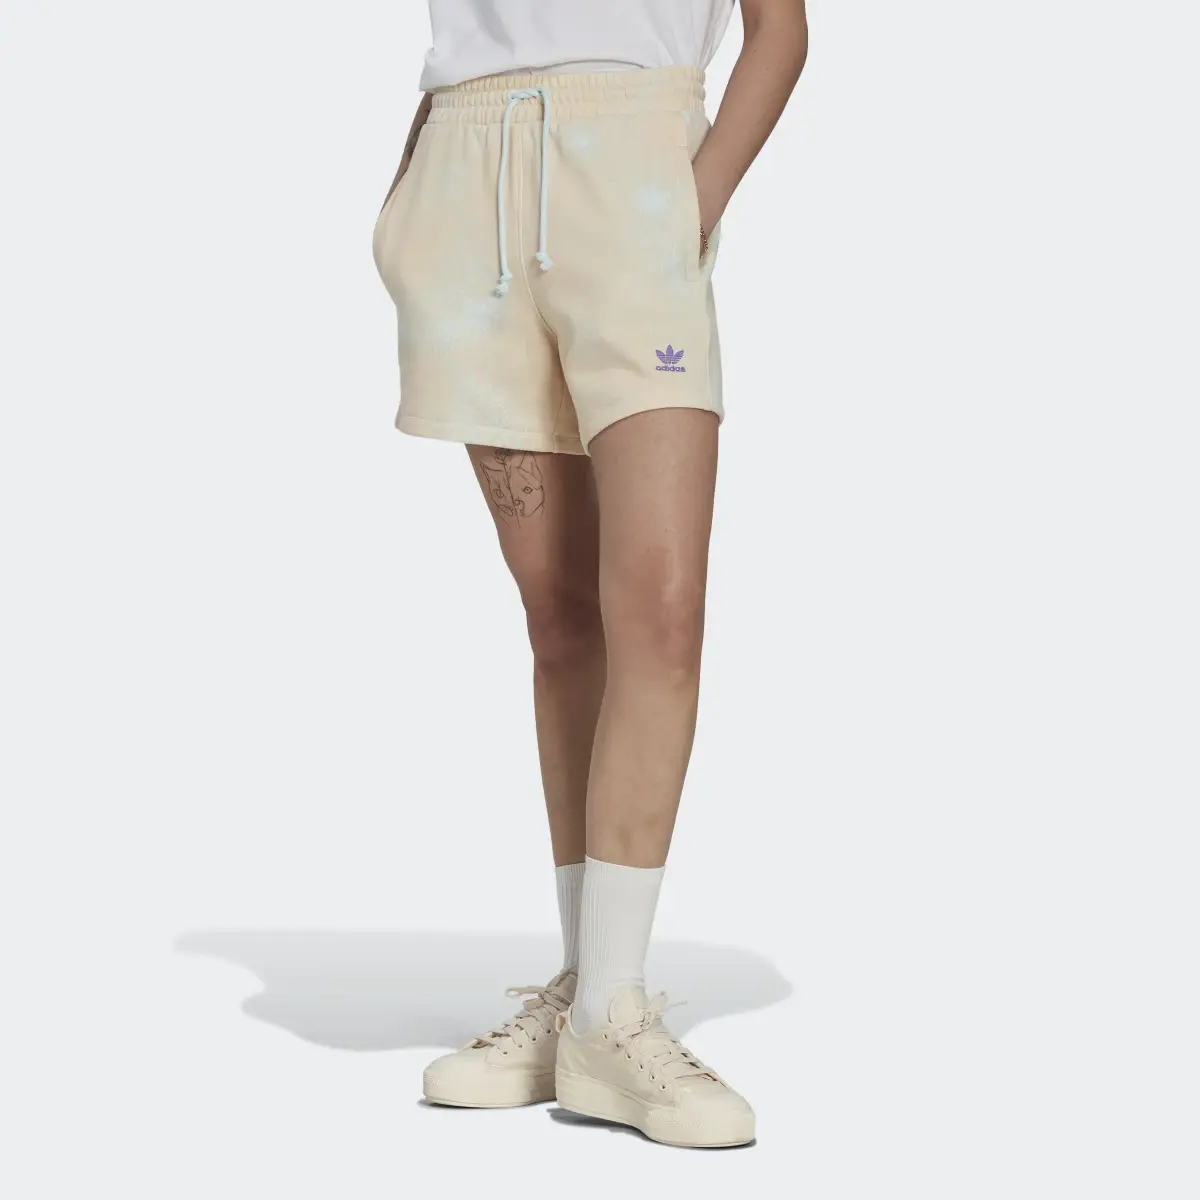 Adidas Shorts Holgados Estampados. 1